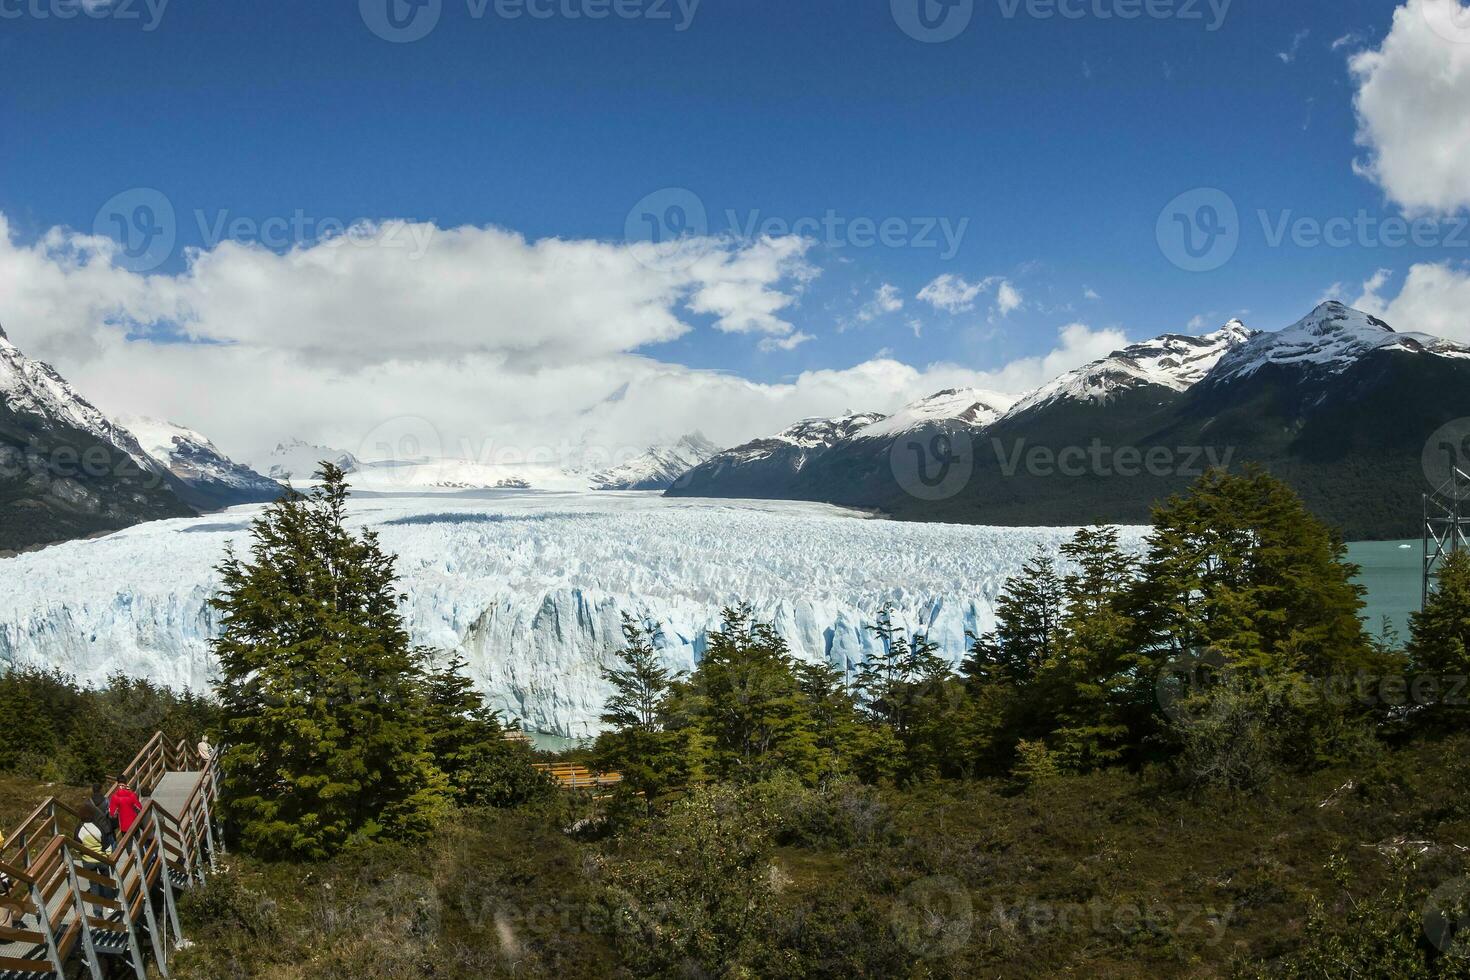 perito mehrnr Gletscher Landschaft, Santa Cruz Provinz, Patagonien, Argentinien. foto